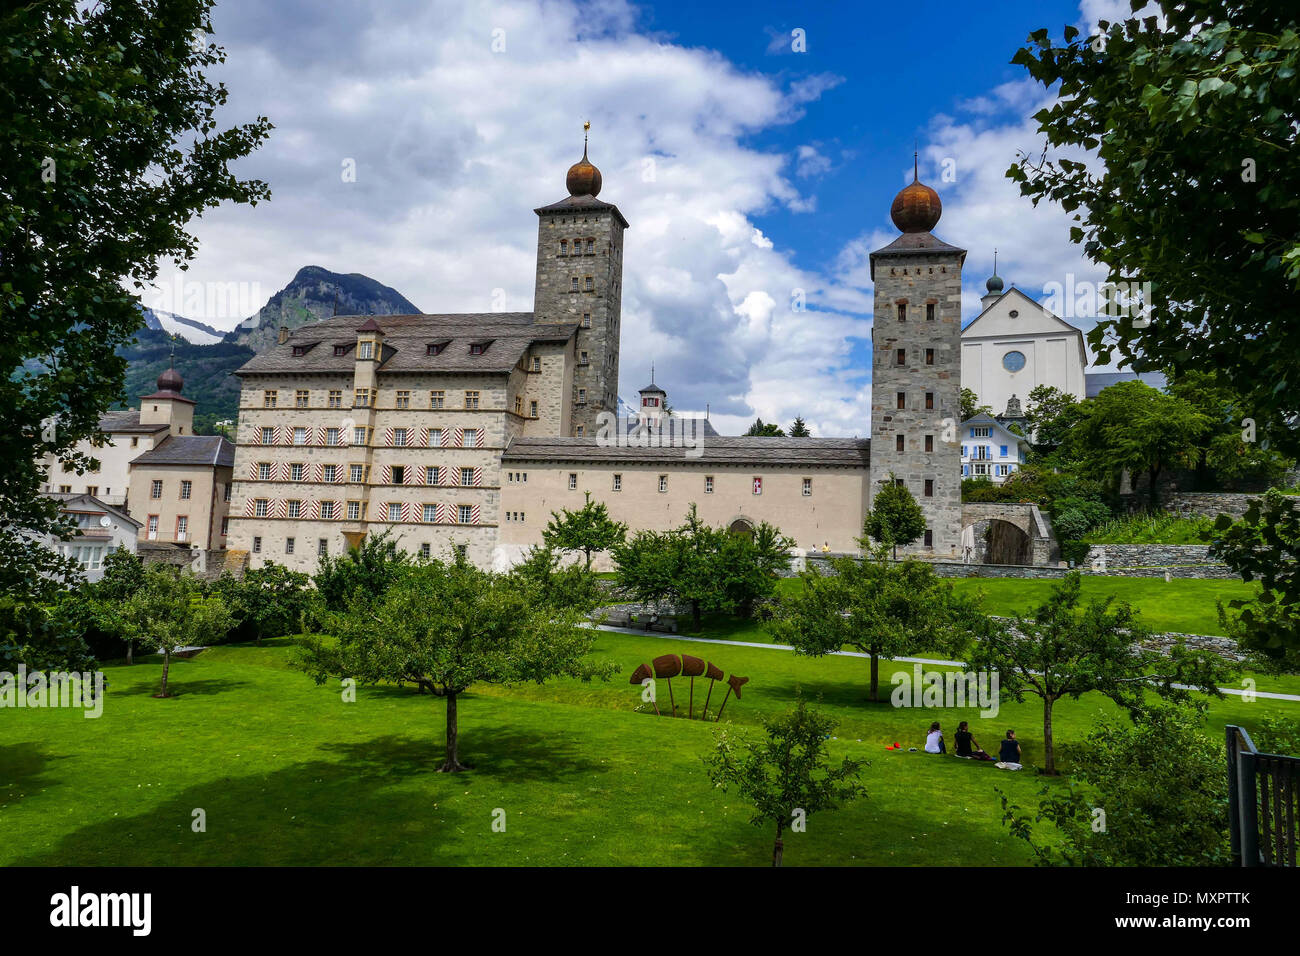 L'/ Stockalperpalast Stockalperpalast, château à Brig / Brig dans les Alpes Suisses, Valais / Wallis (Suisse) Banque D'Images